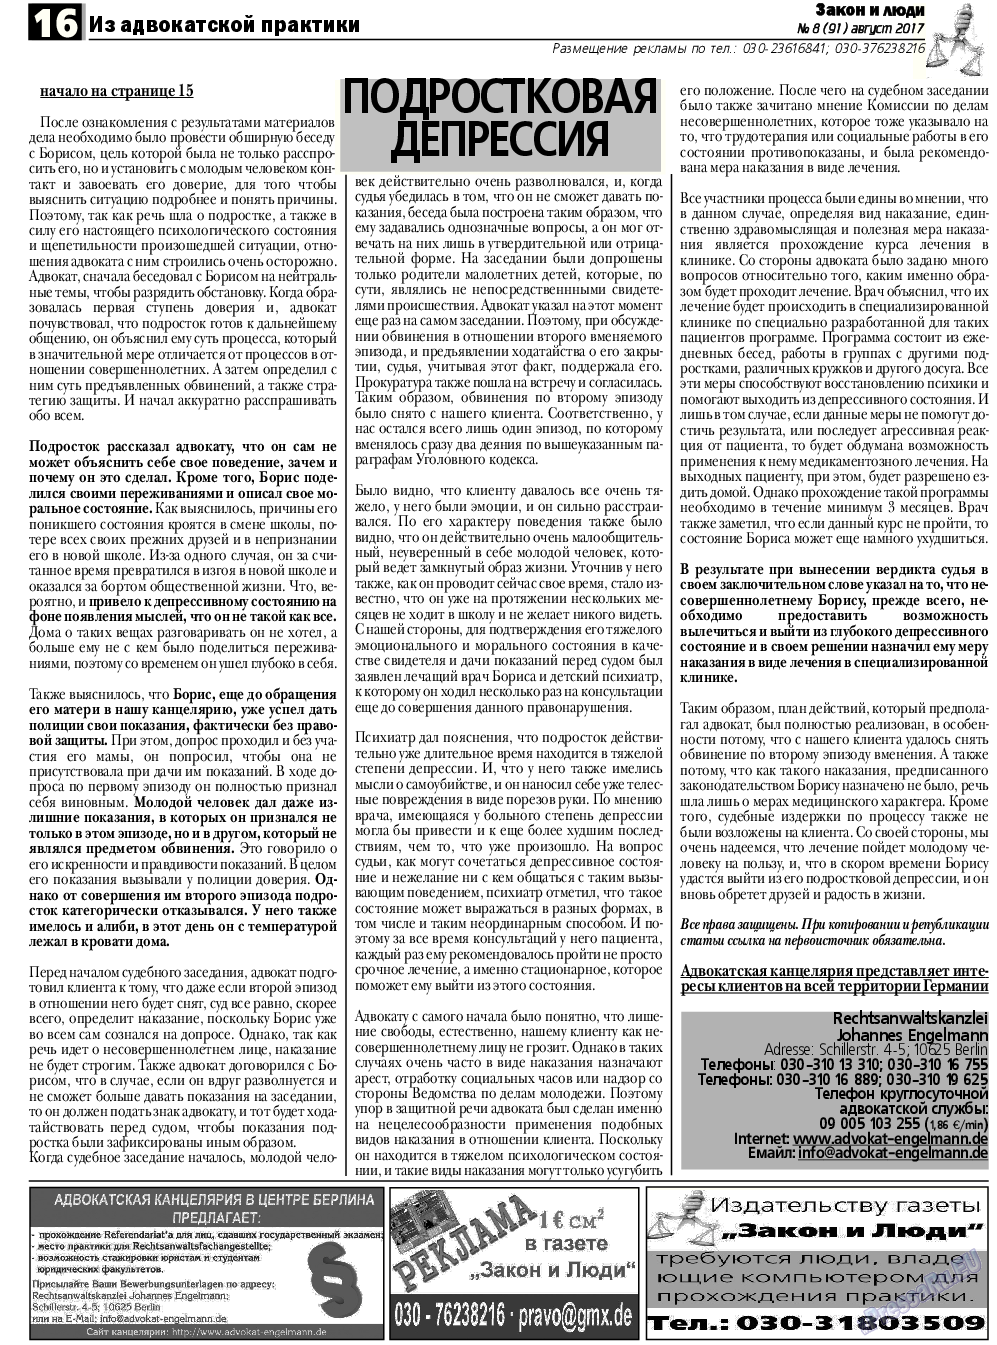 Закон и люди, газета. 2017 №8 стр.16